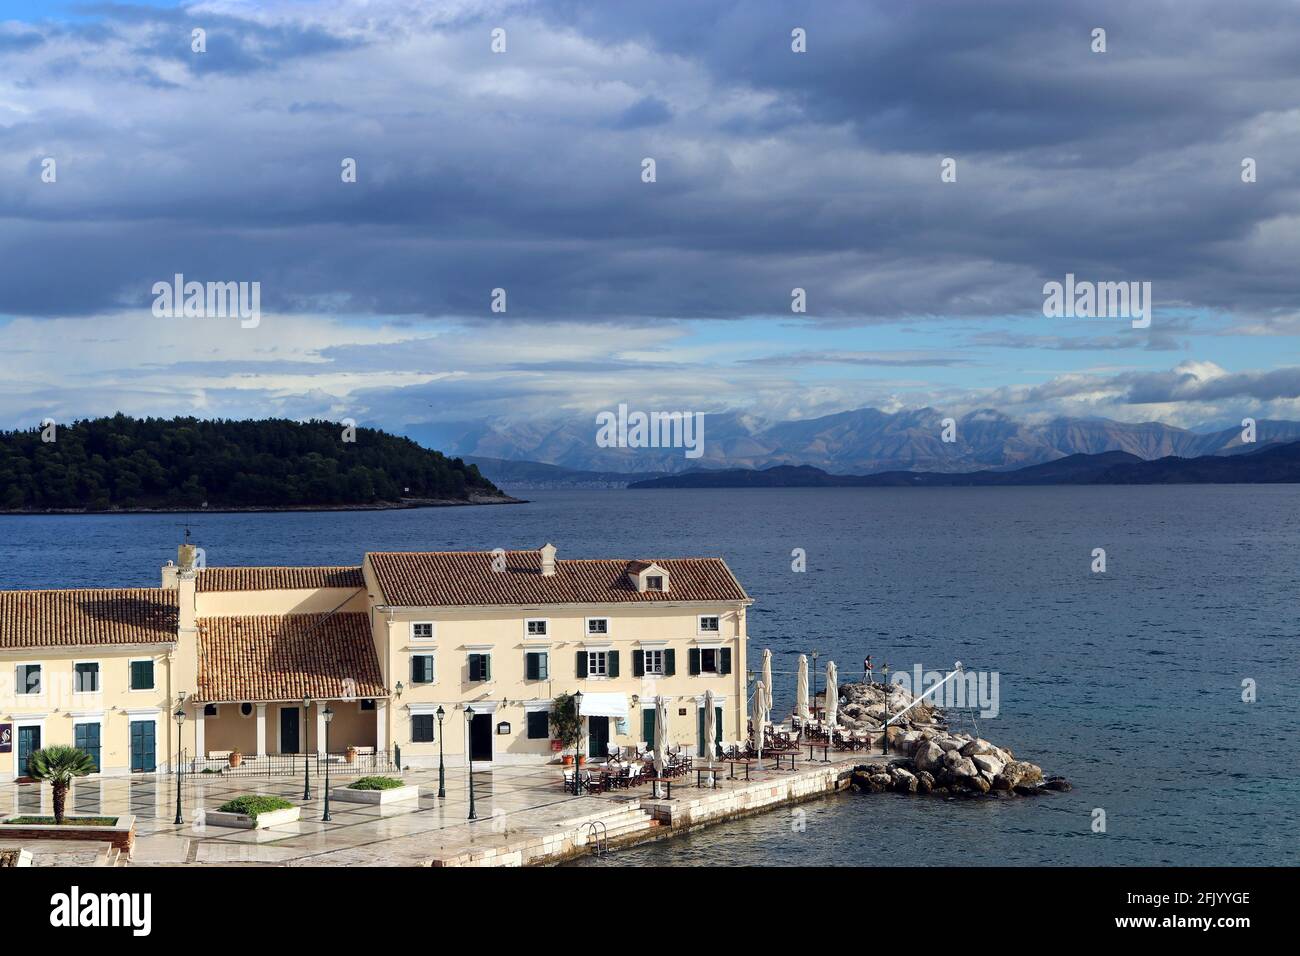 Città vecchia di Corfù, spiaggia di Faliraki. En PLO ristorante e guardando oltre l'isola di Vidos e la Grecia continentale. Settembre, appena dopo una tempesta di pioggia. Foto Stock